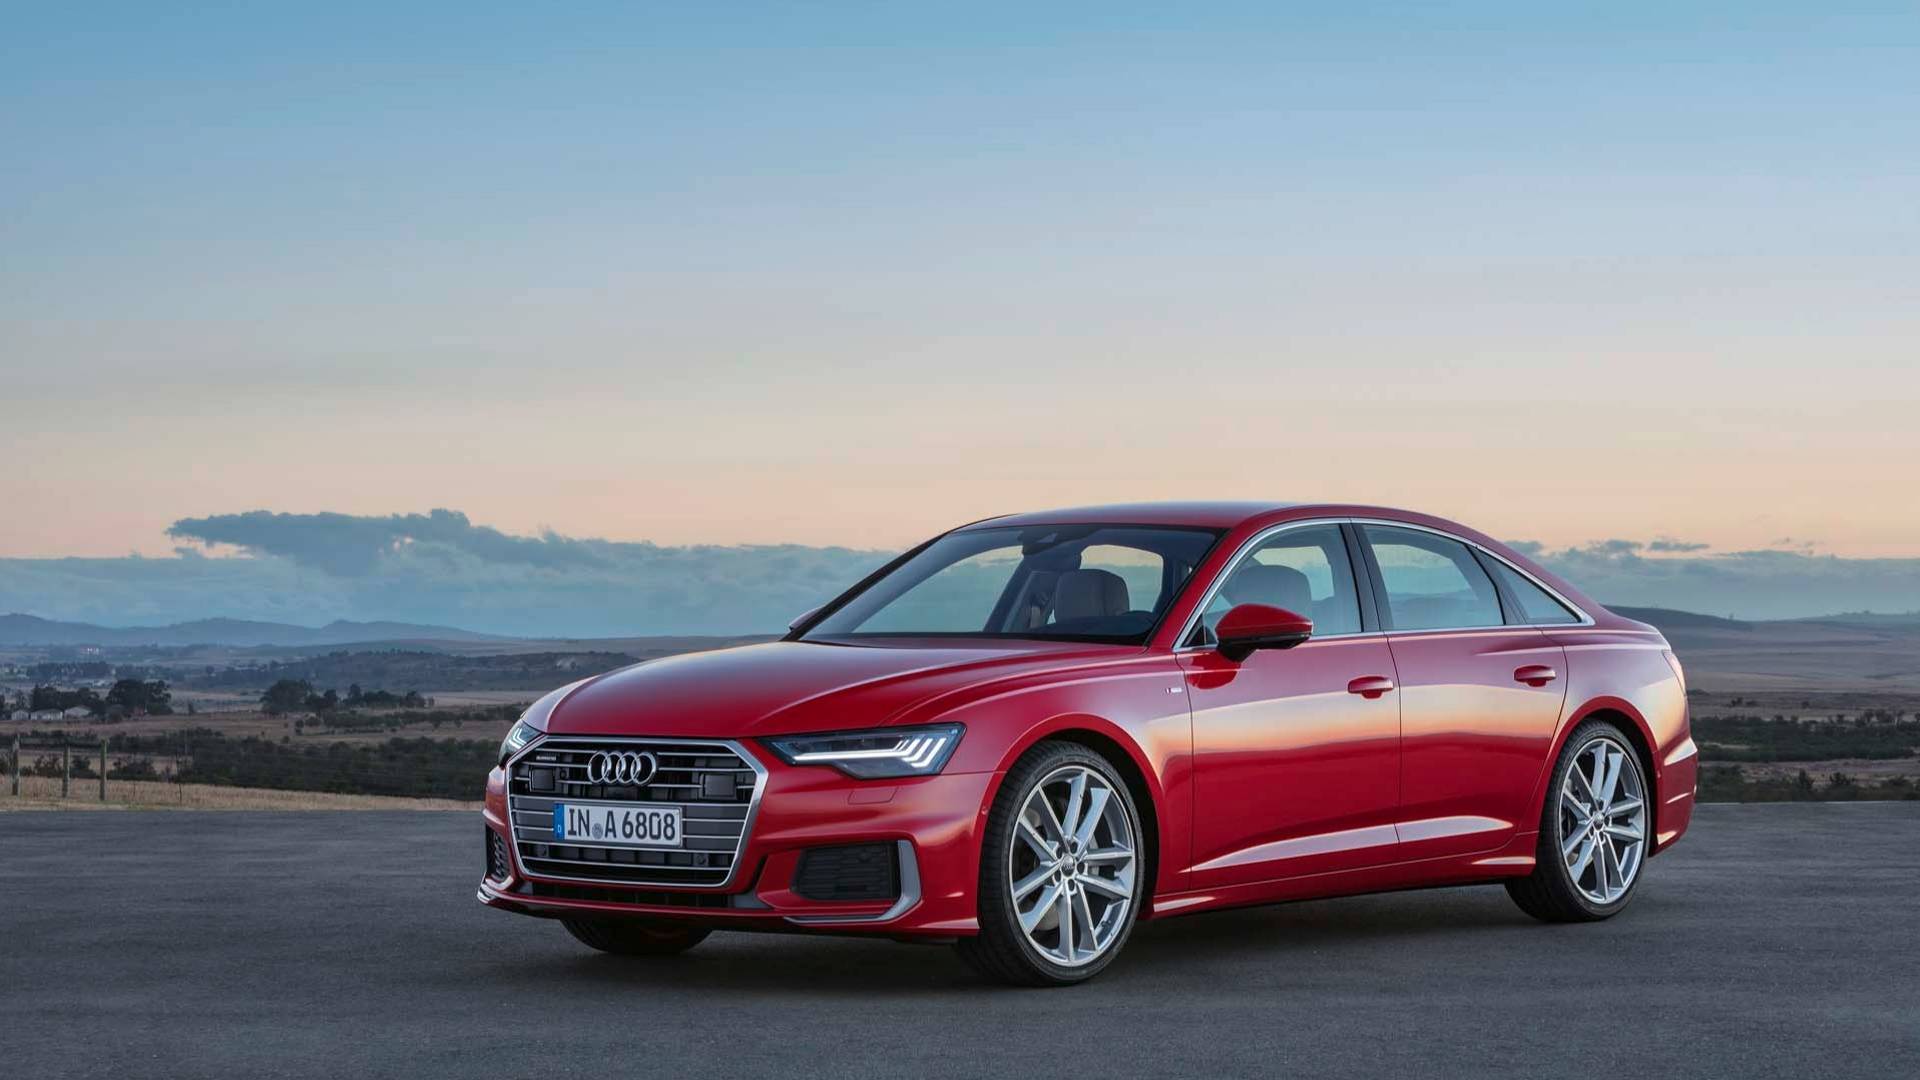 Audi представила седан A6 нового поколения